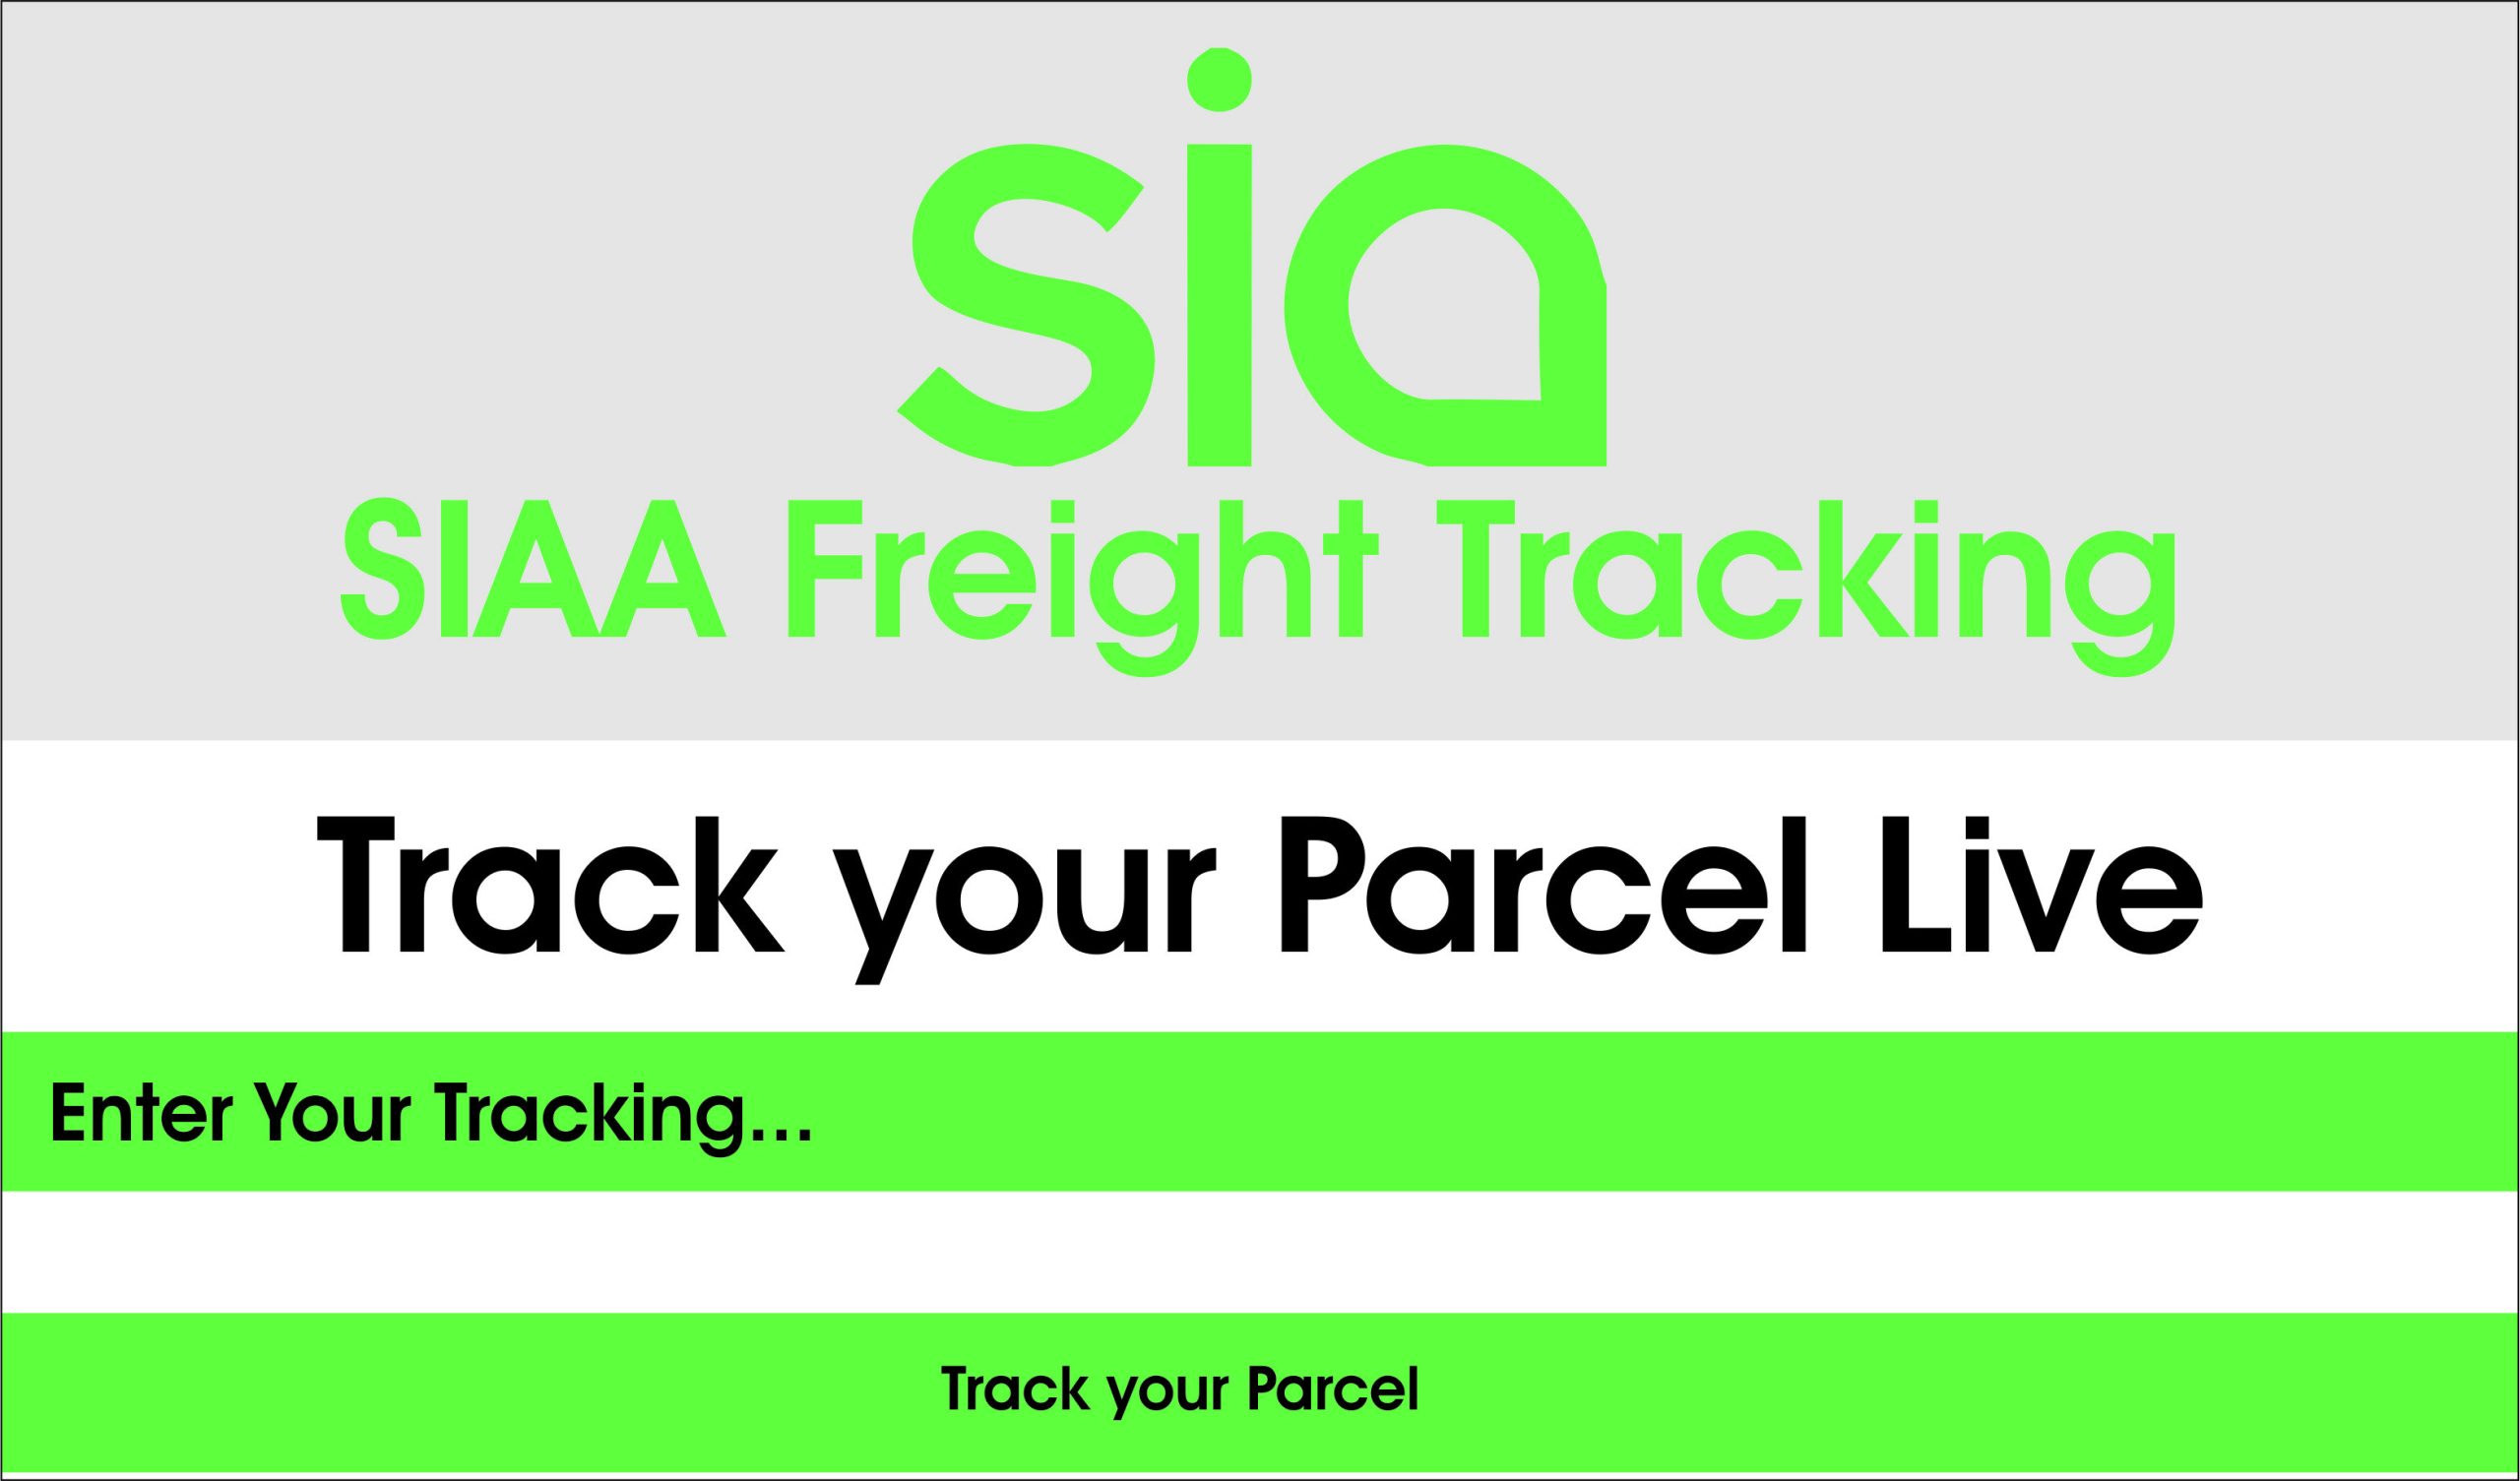 SIAA (SAIA) Freight Tracking